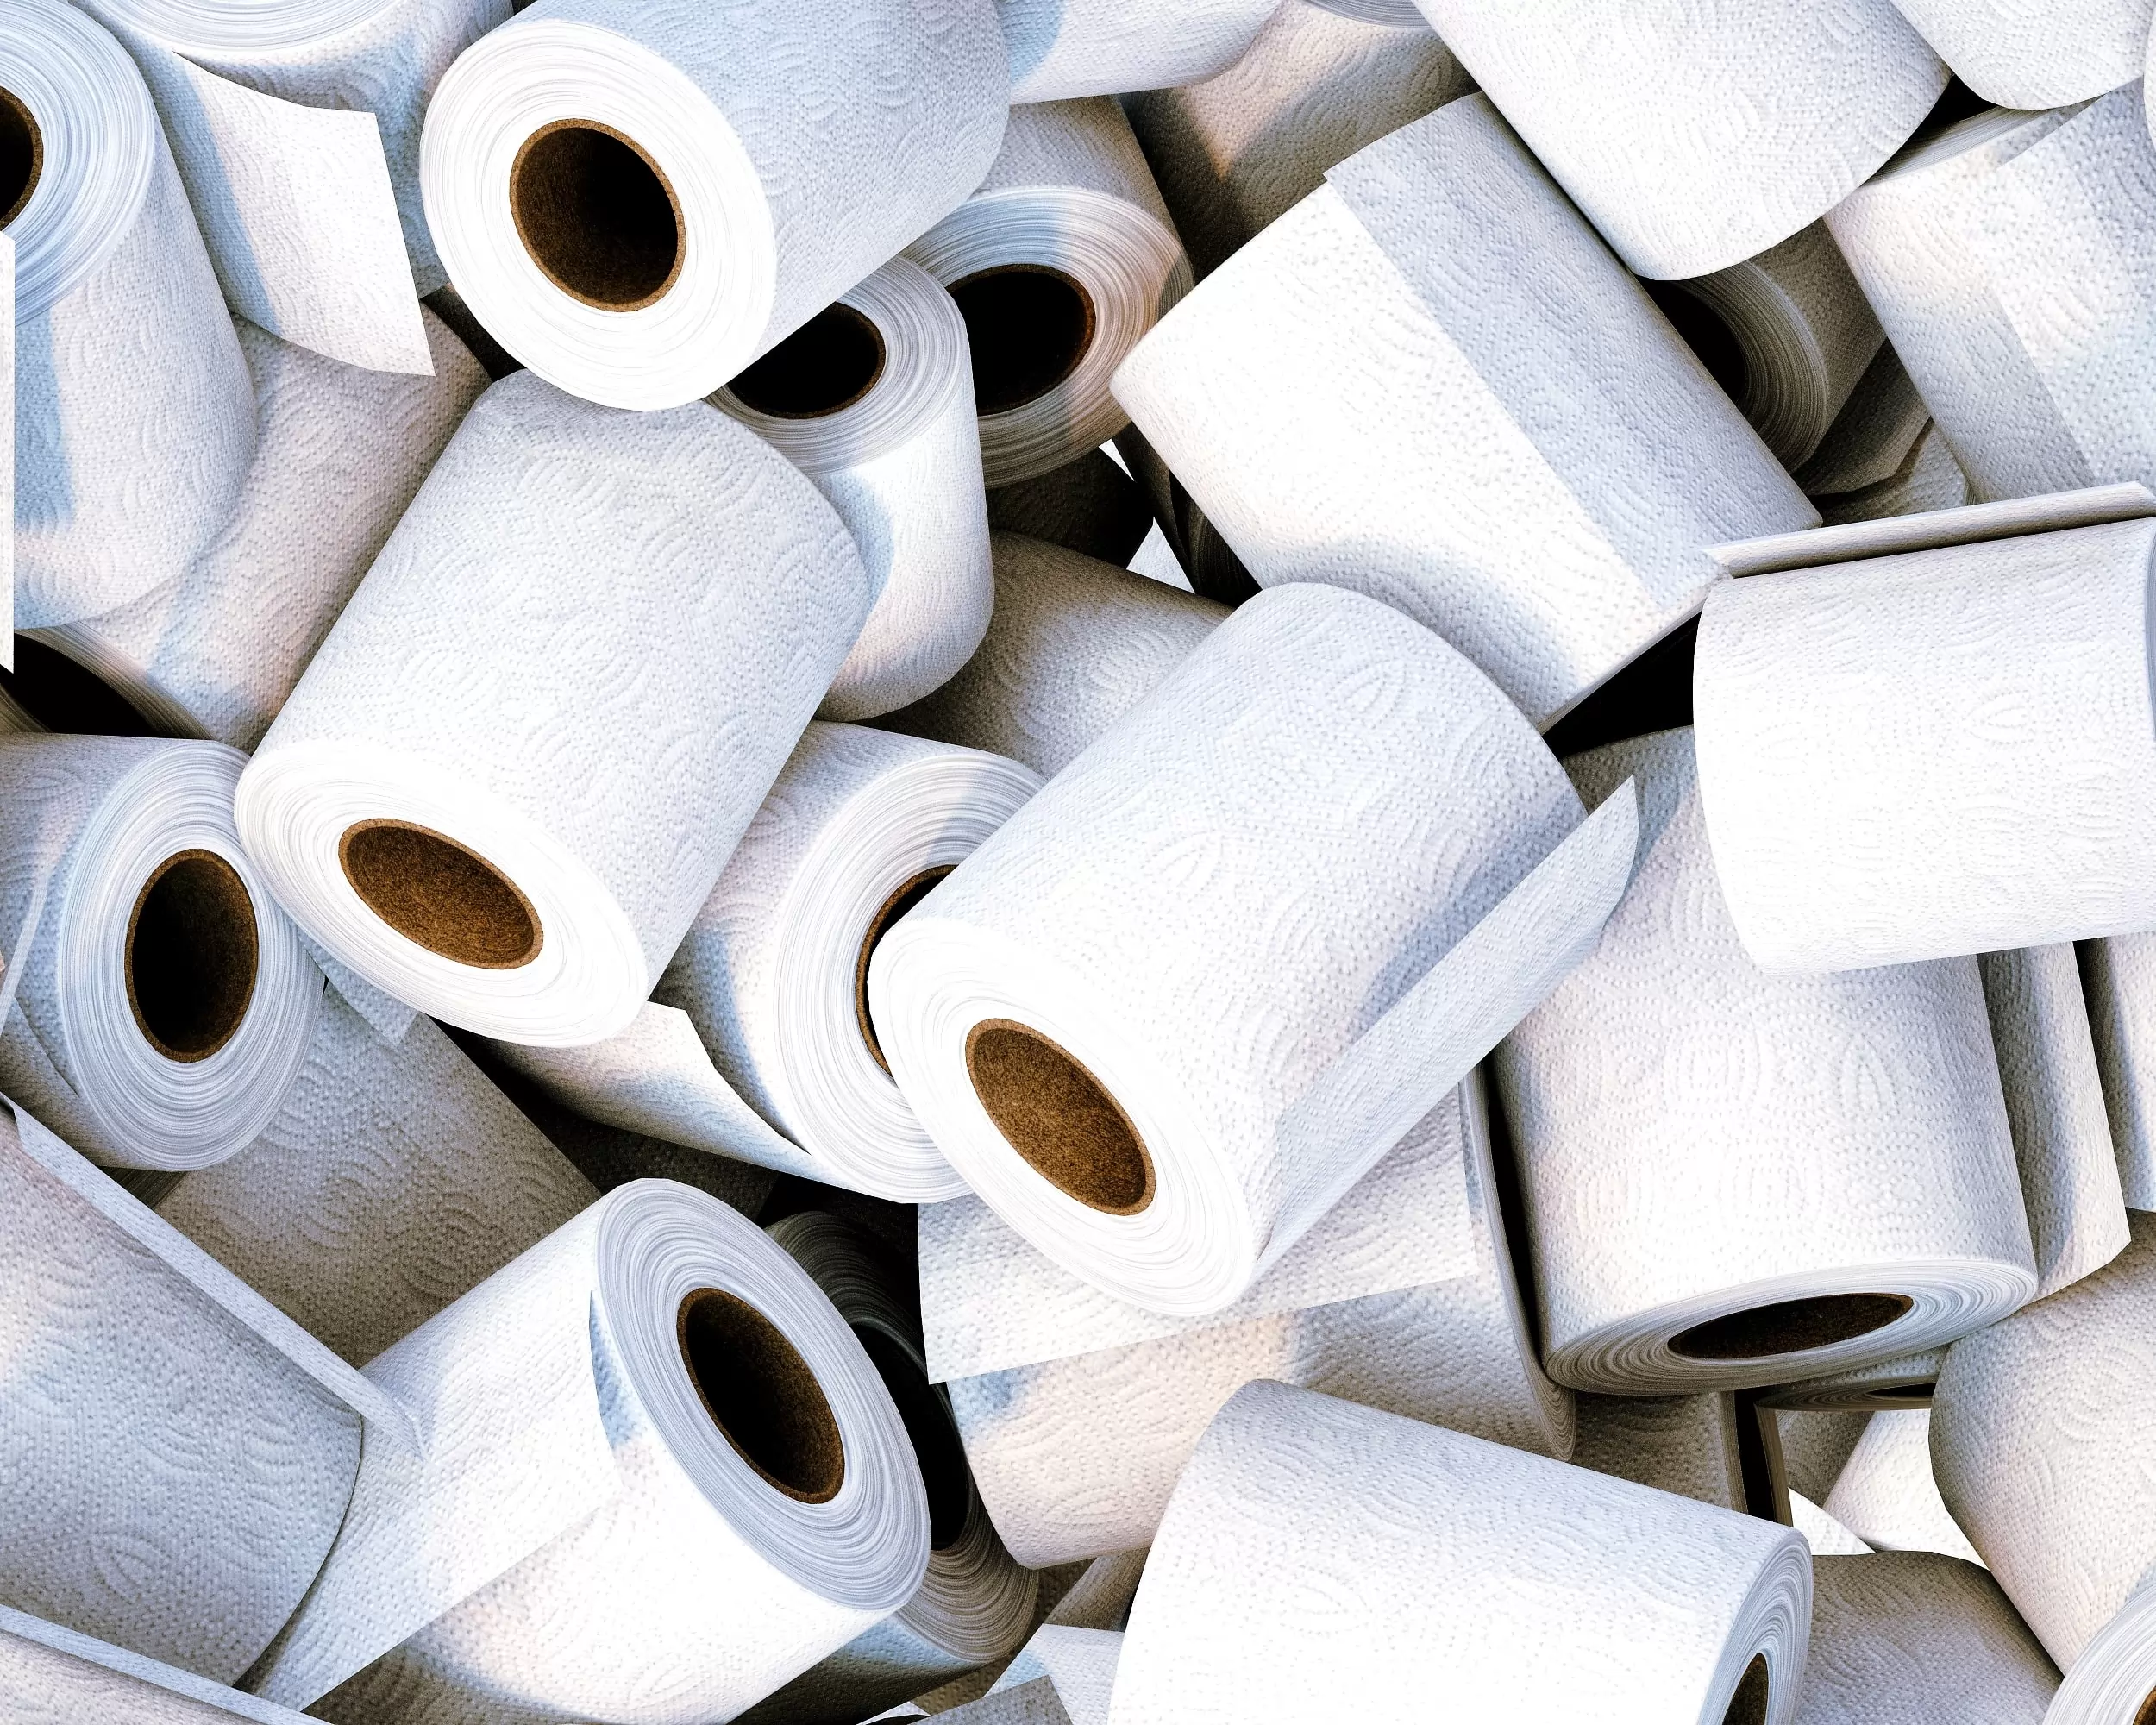 Le marché du papier toilette